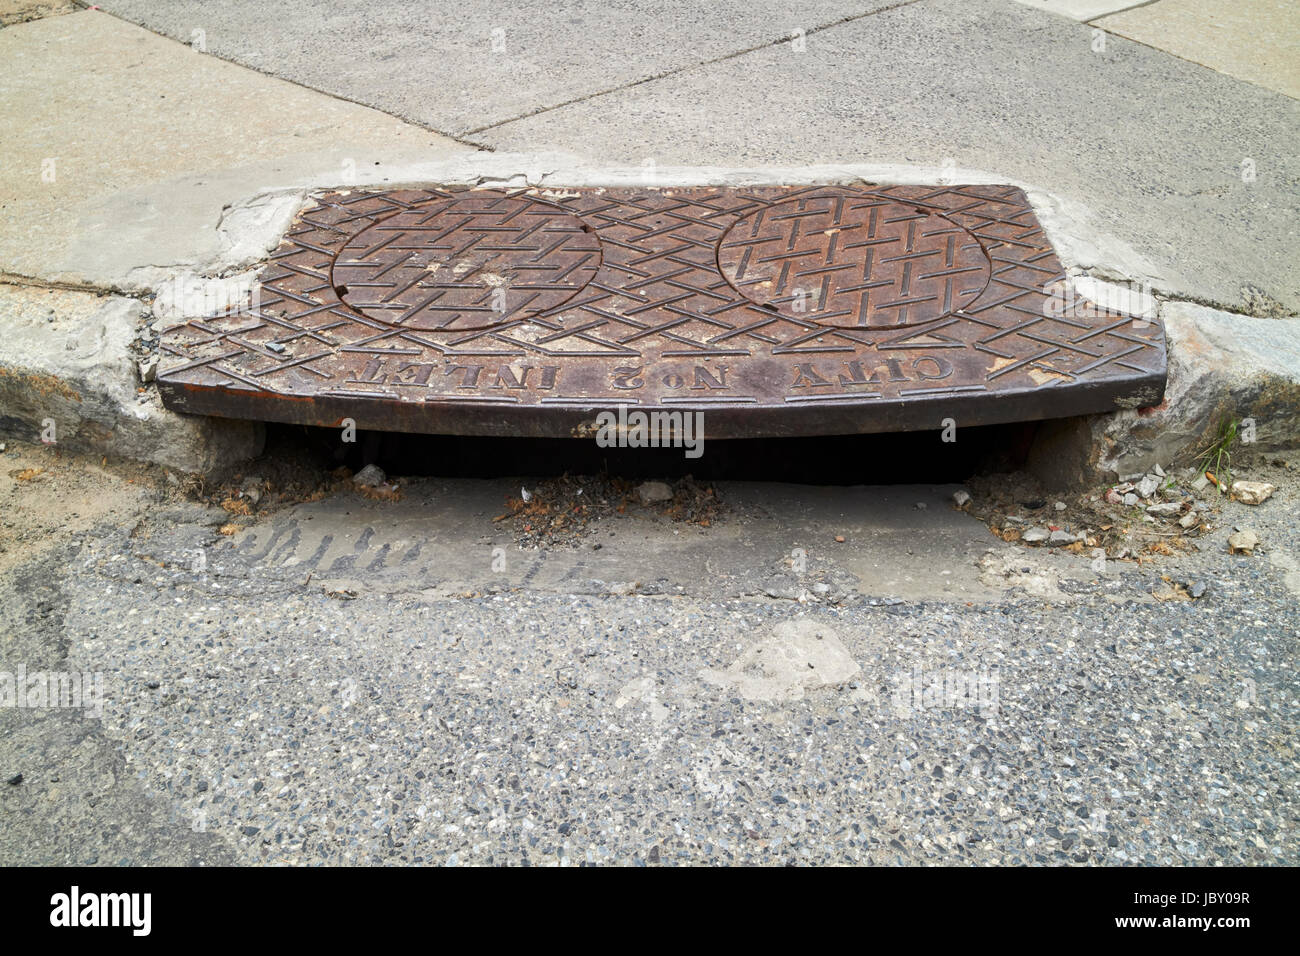 Coin de rue ville nous freiner d'eaux pluviales Philadelphie USA Banque D'Images